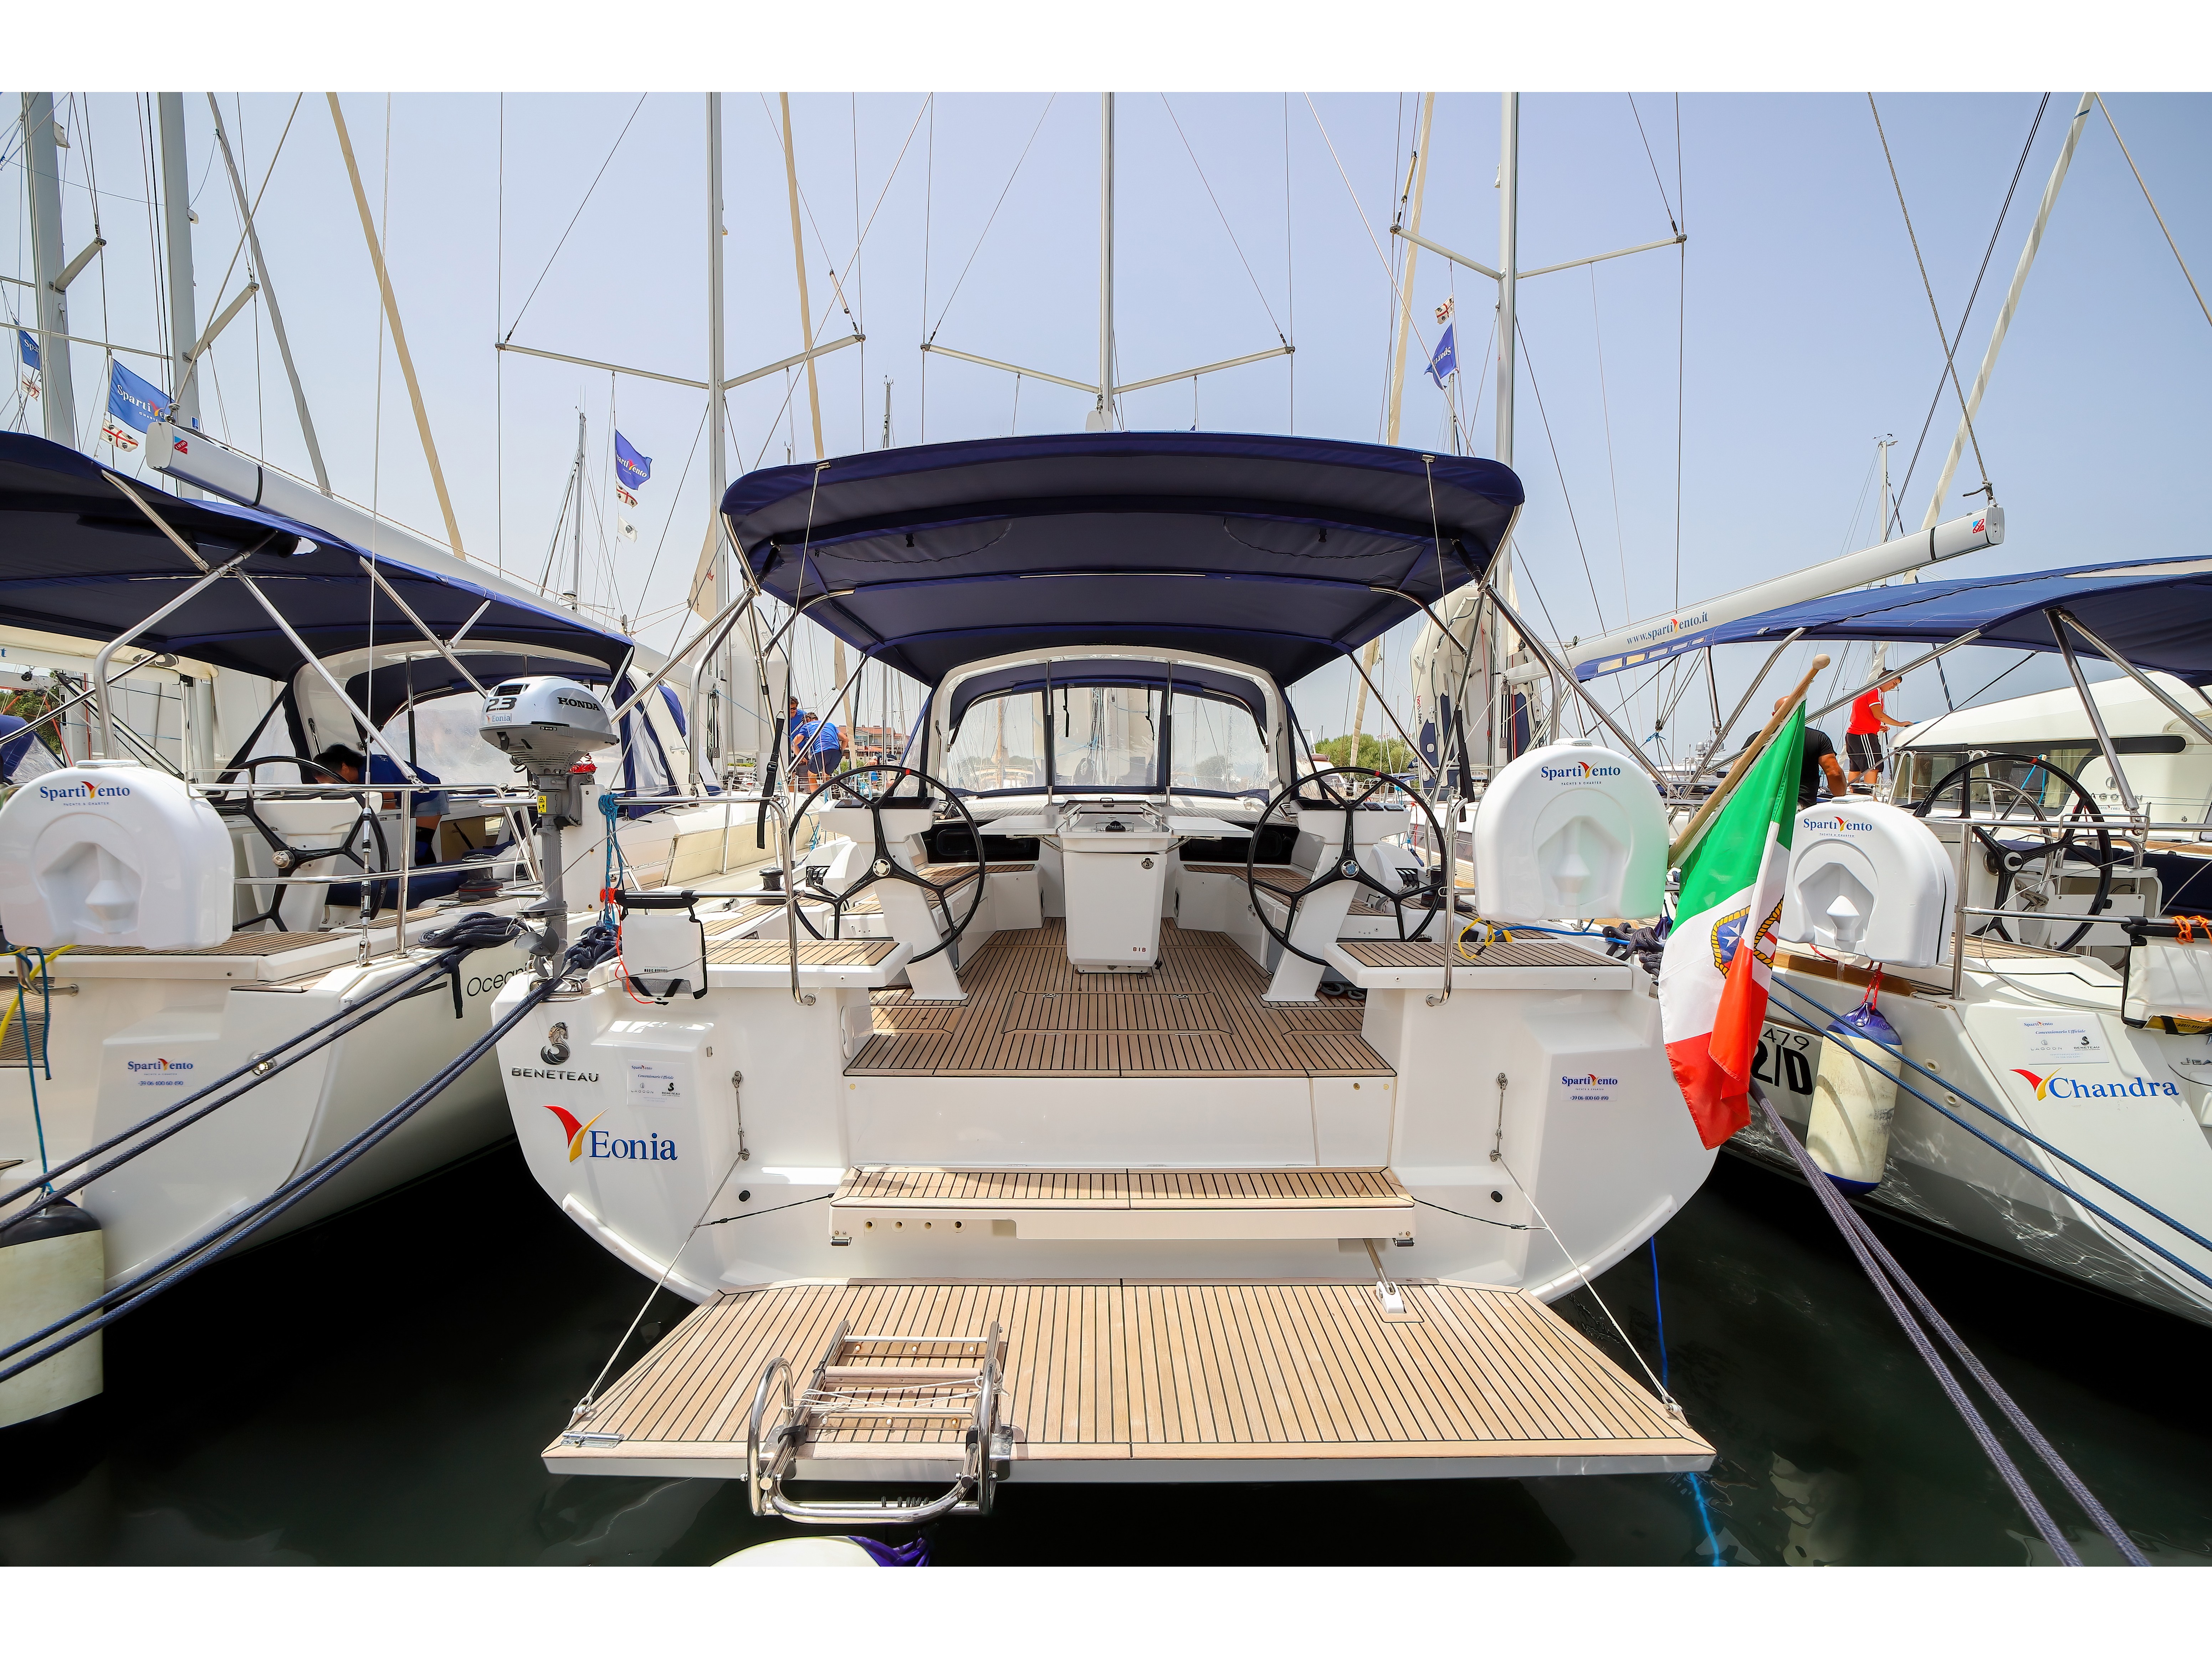 Oceanis 46.1 - Yacht Charter Olbia & Boat hire in Italy Sardinia Costa Smeralda Olbia Marina di Olbia 2